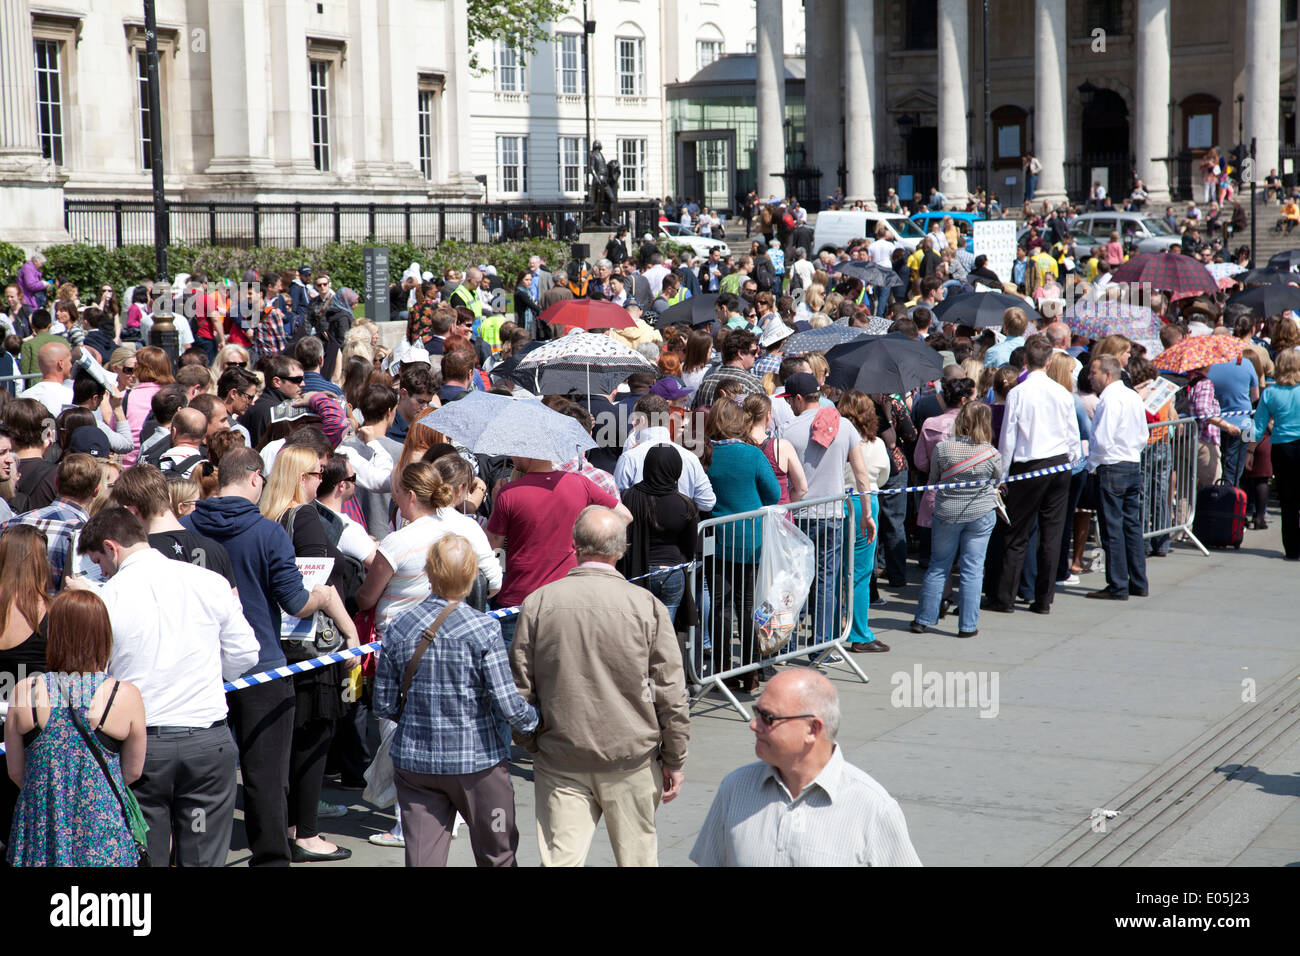 Menschen, die Abstimmung für das südafrikanische Wahl warten in Warteschlangen am Trafalgar Square nach Südafrika Haus 30. April 2014 - London-UK Stockfoto